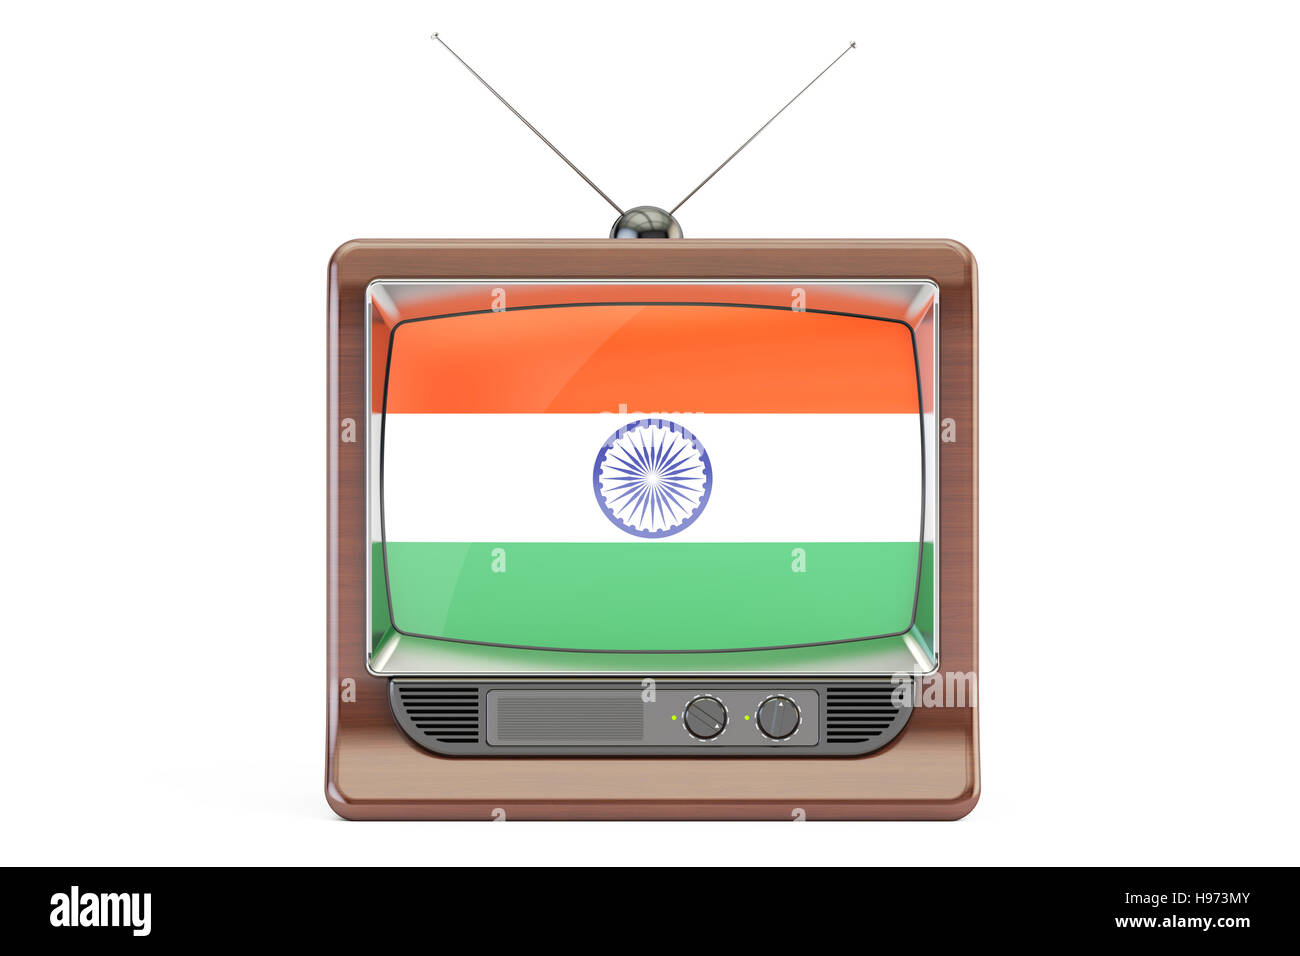 Vieux téléviseur avec drapeau de l'Inde. Concept de la télévision indienne, rendu 3D isolé sur fond blanc Banque D'Images